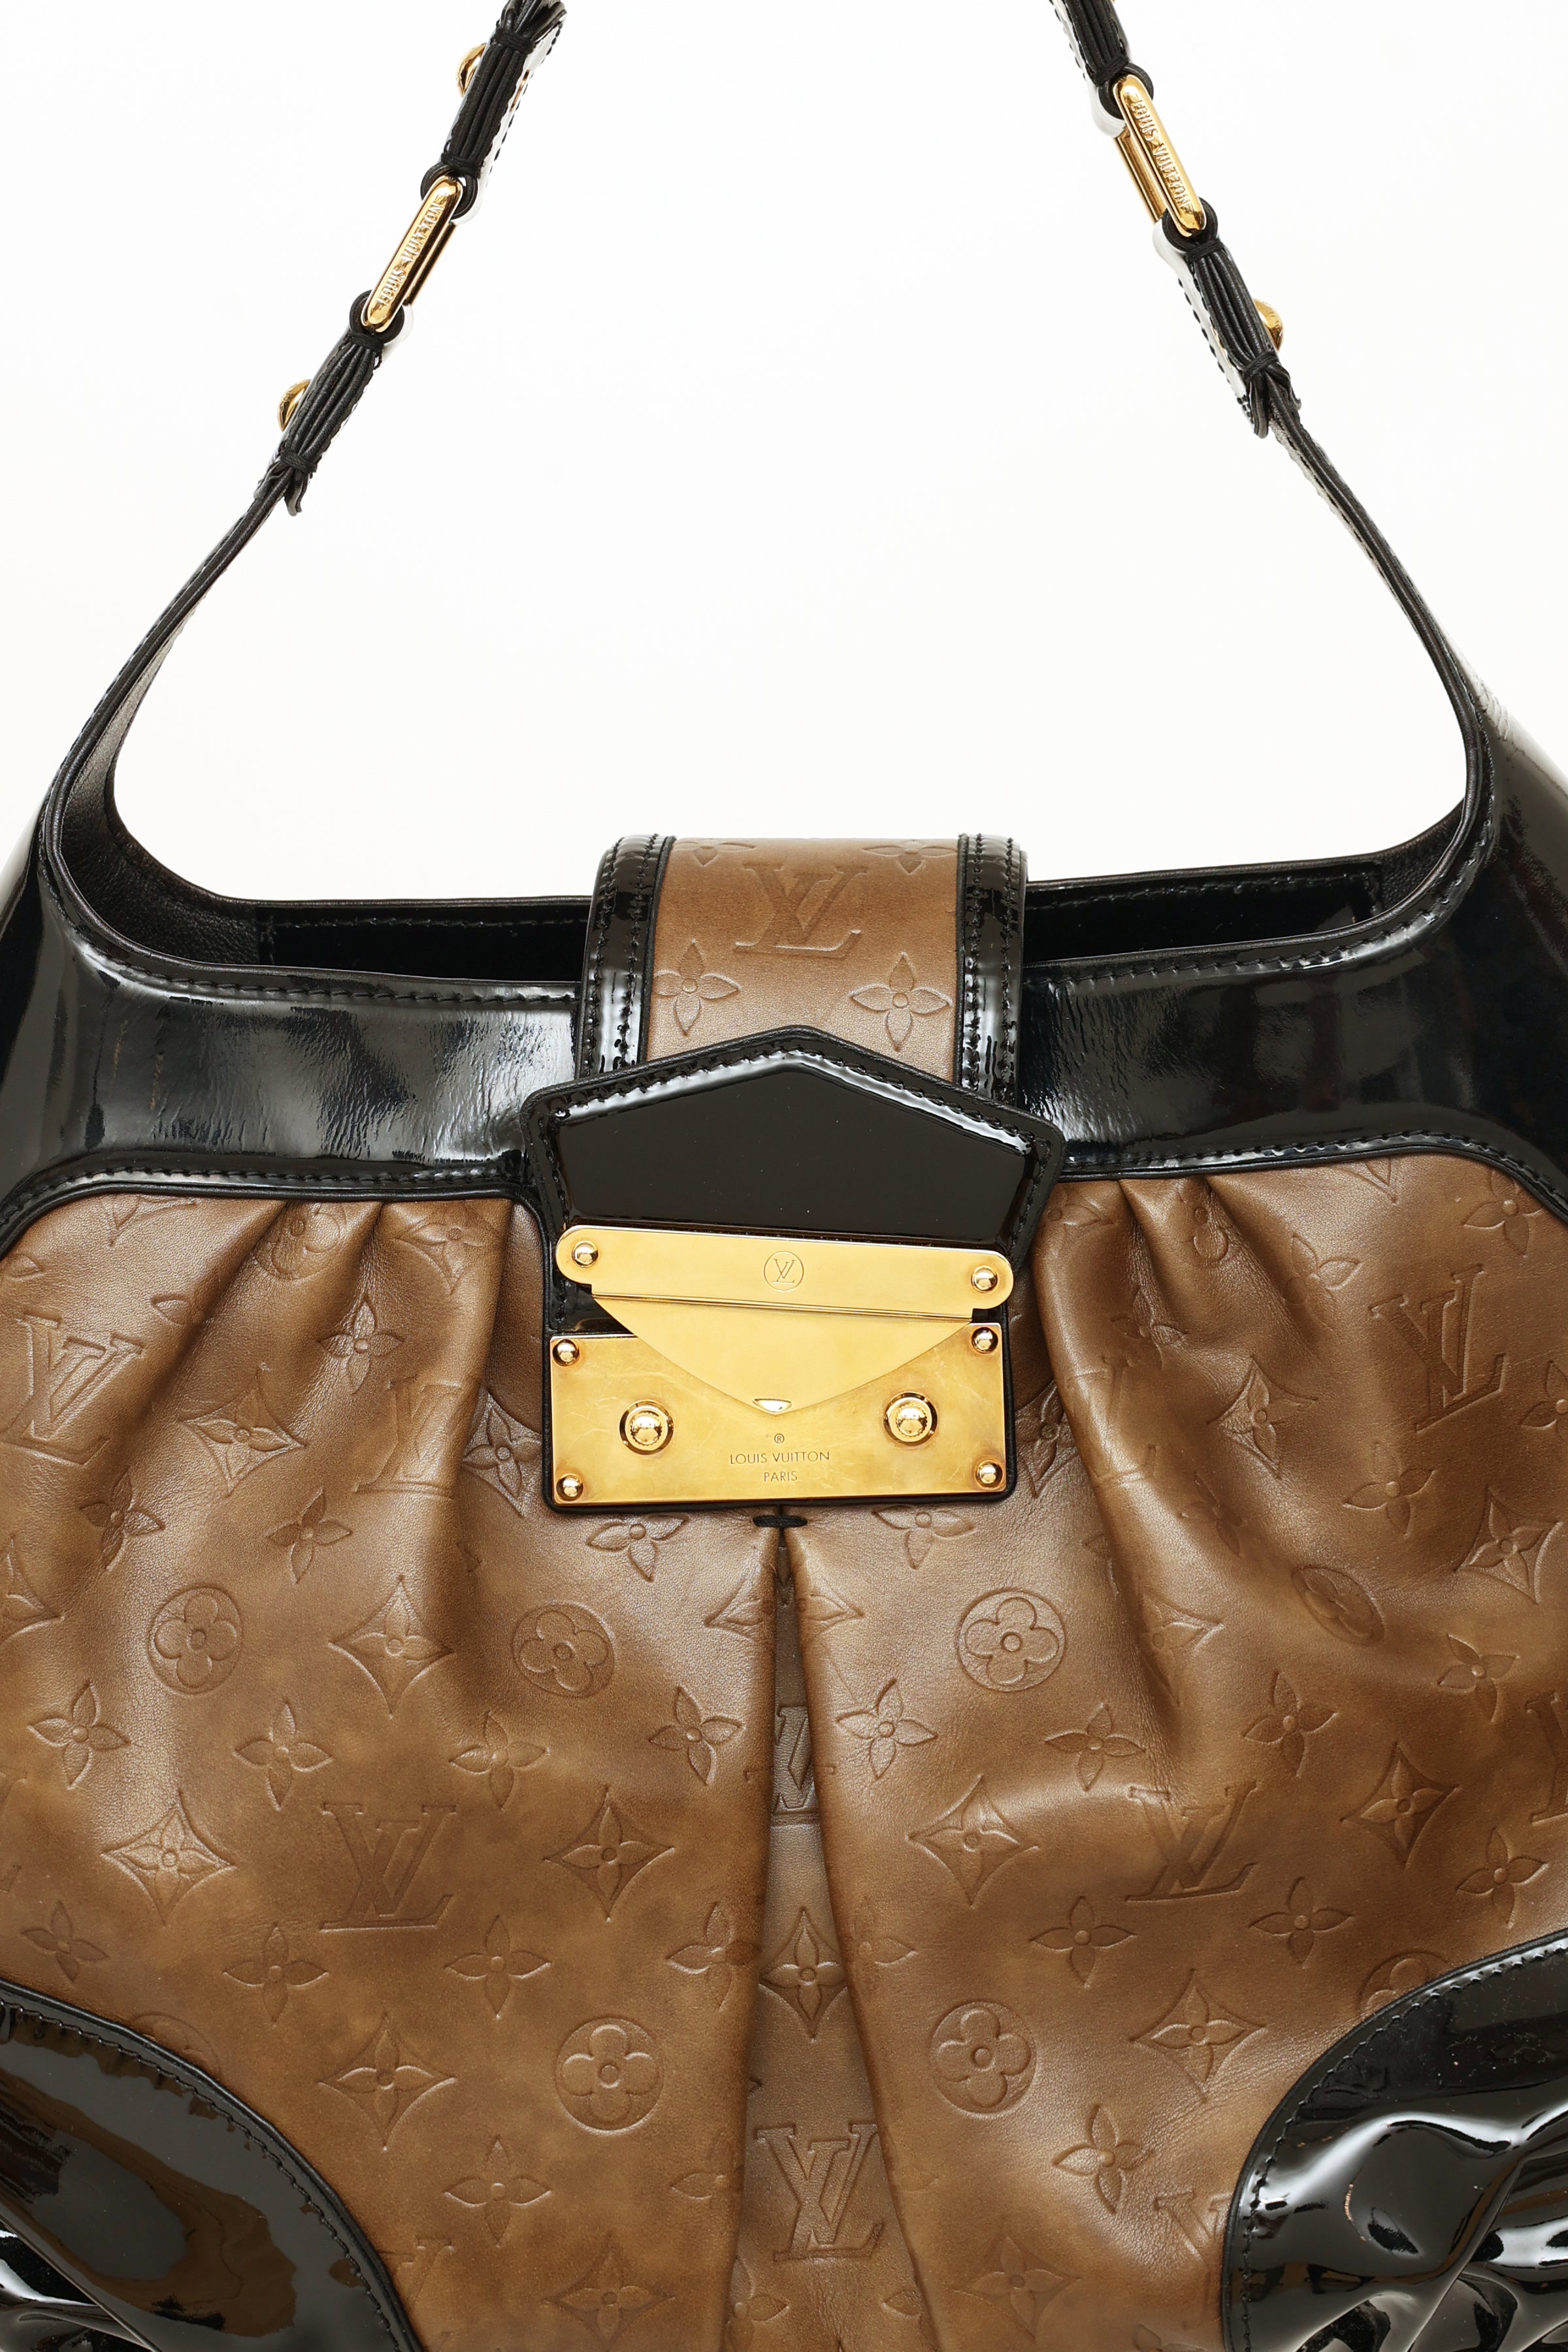 Louis Vuitton Monogram Leopard Polly - Brown Hobos, Handbags